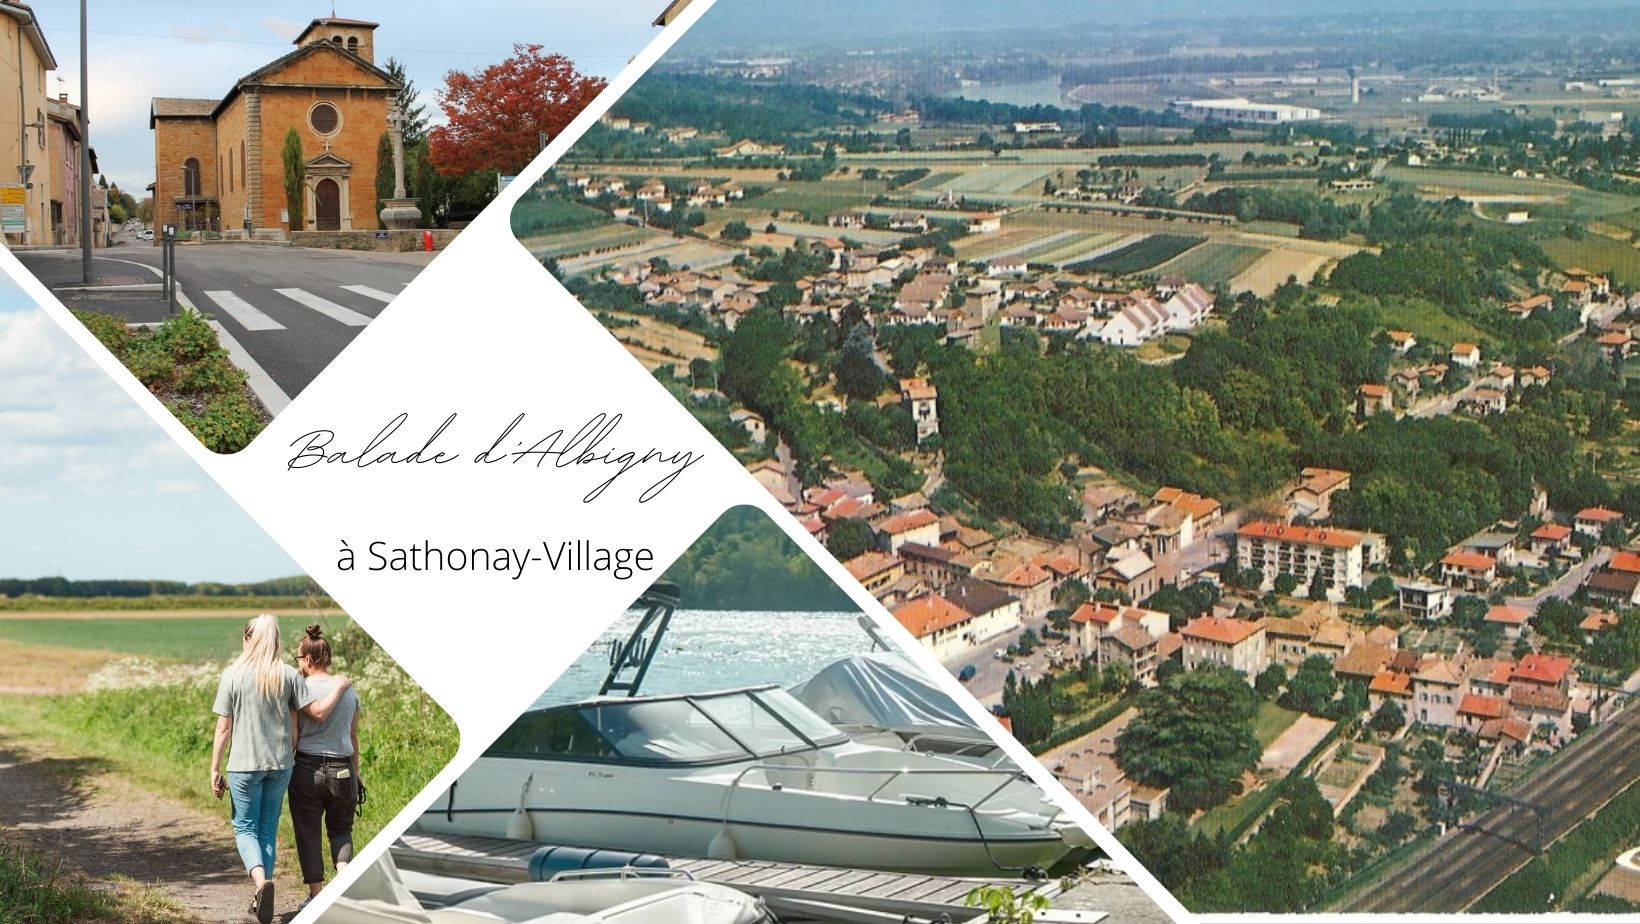 Balade d’Albigny à Sathonay-Village par le nouveau GR® 169